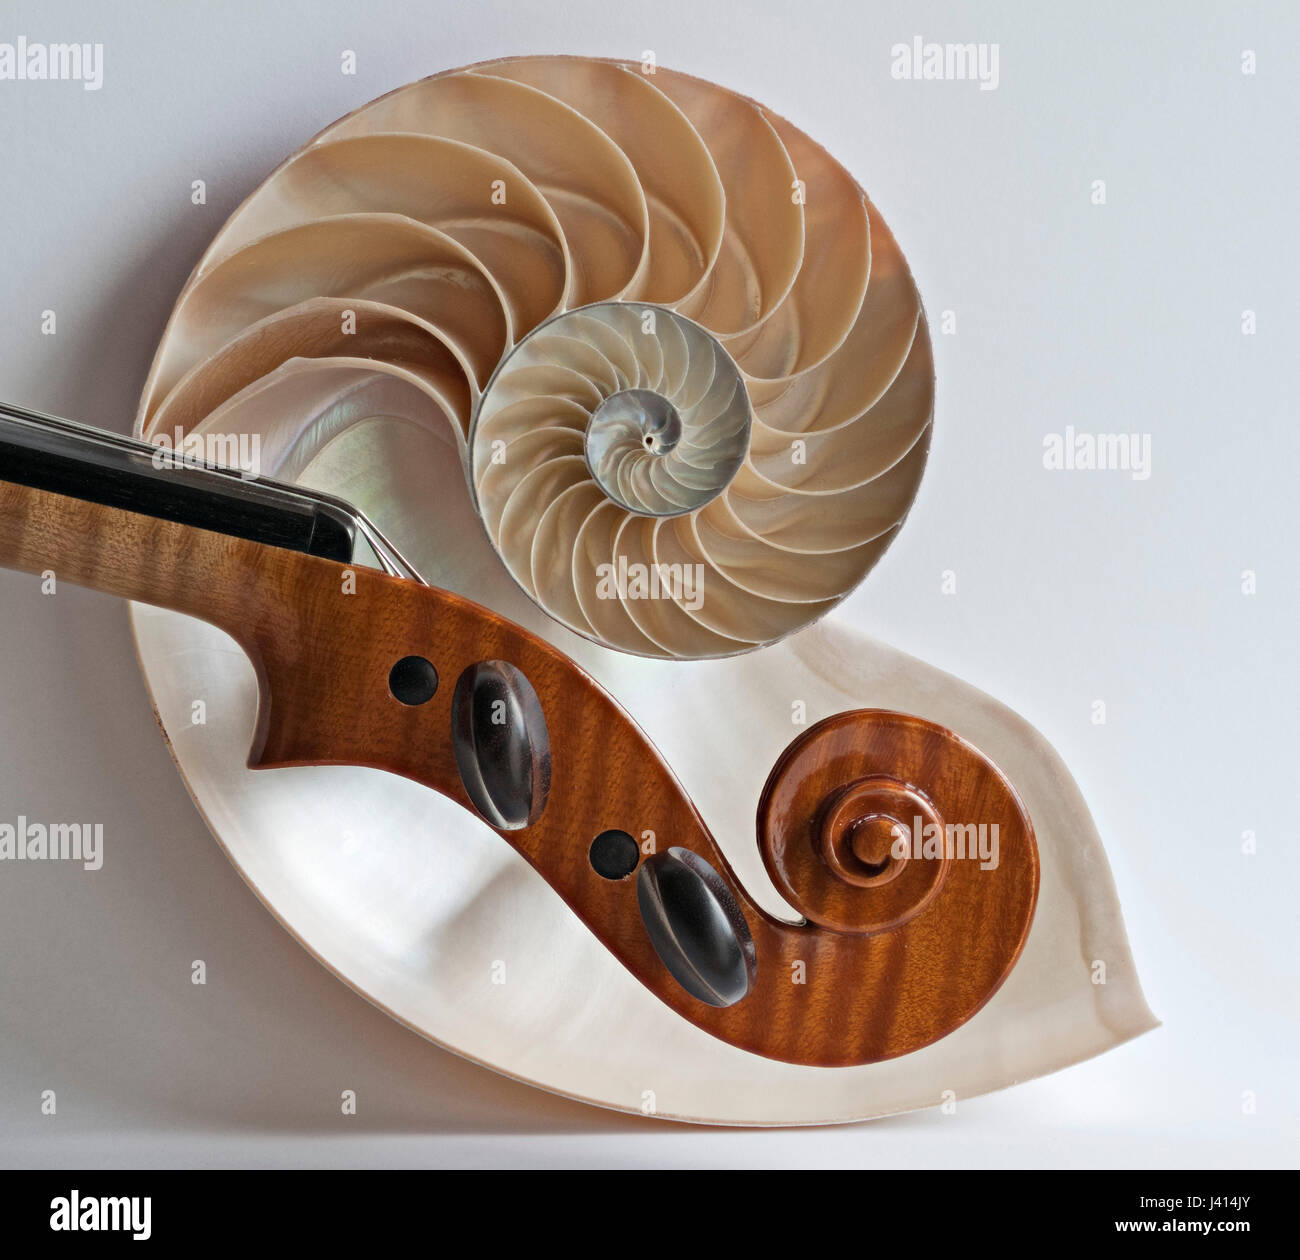 Violon violon alto et défilement sectioned Nautilus shell, focus-stacked image à l'aide de fenêtre donnant la lumière naturelle de subtiles ombres sur fond clair. Banque D'Images